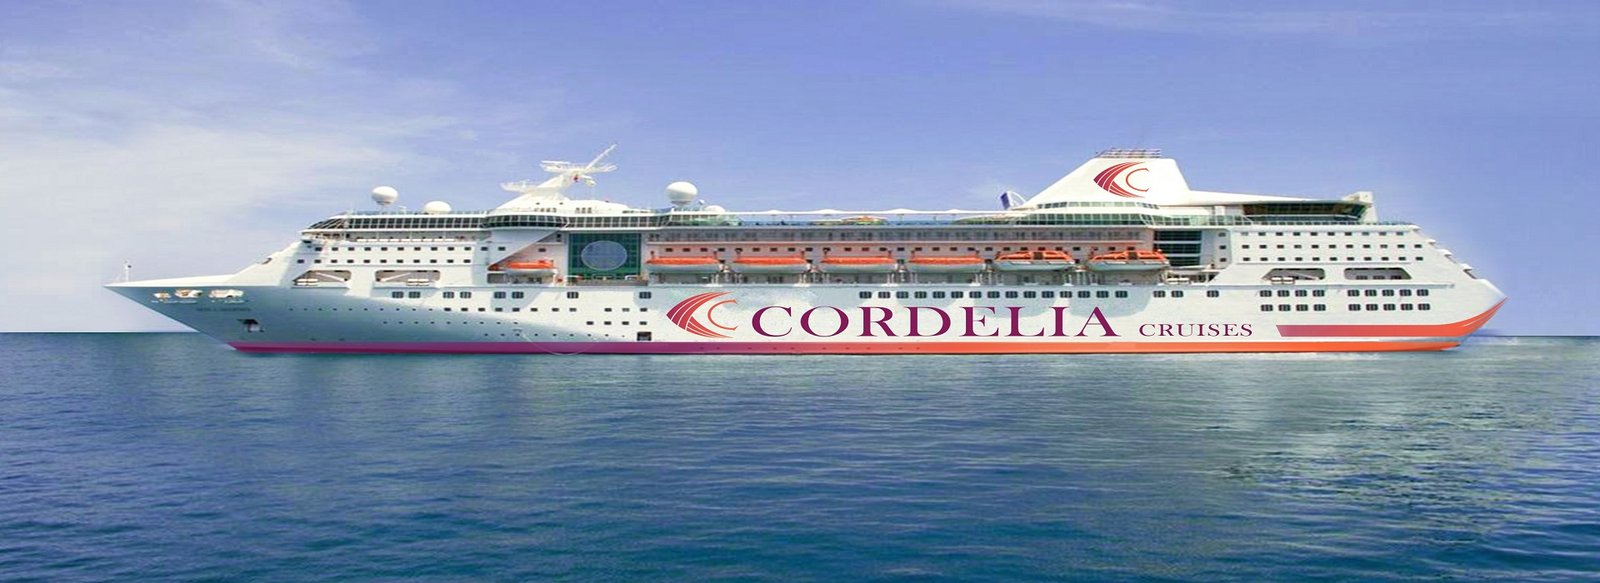 Cordelia Cruises – Indian Largest Premium Cruise Liner